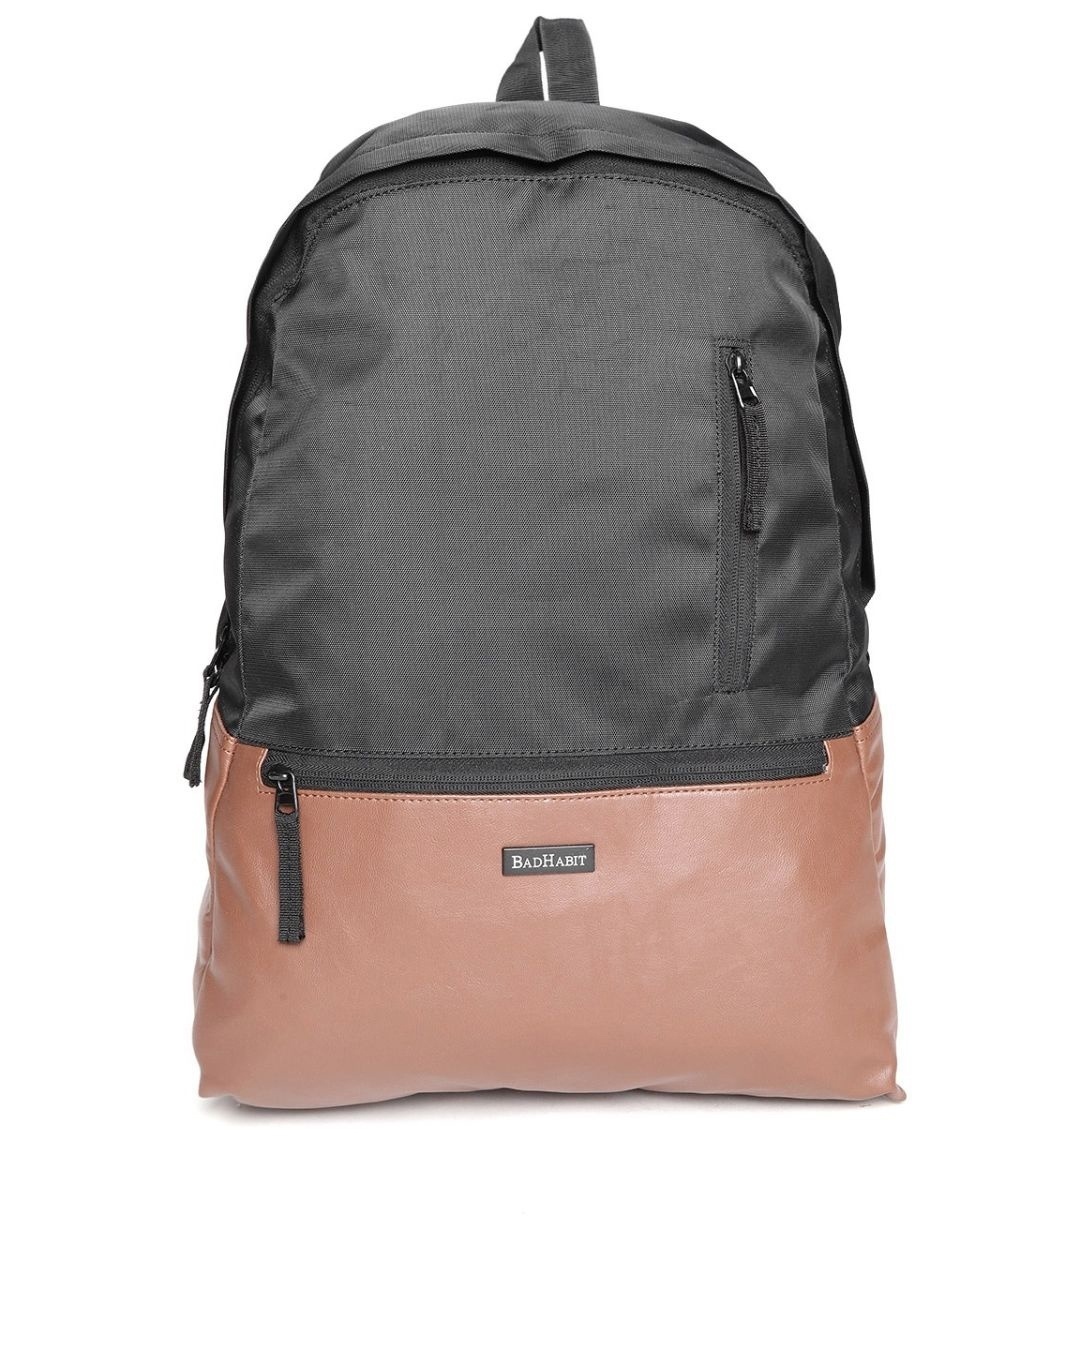 Shop Backpack